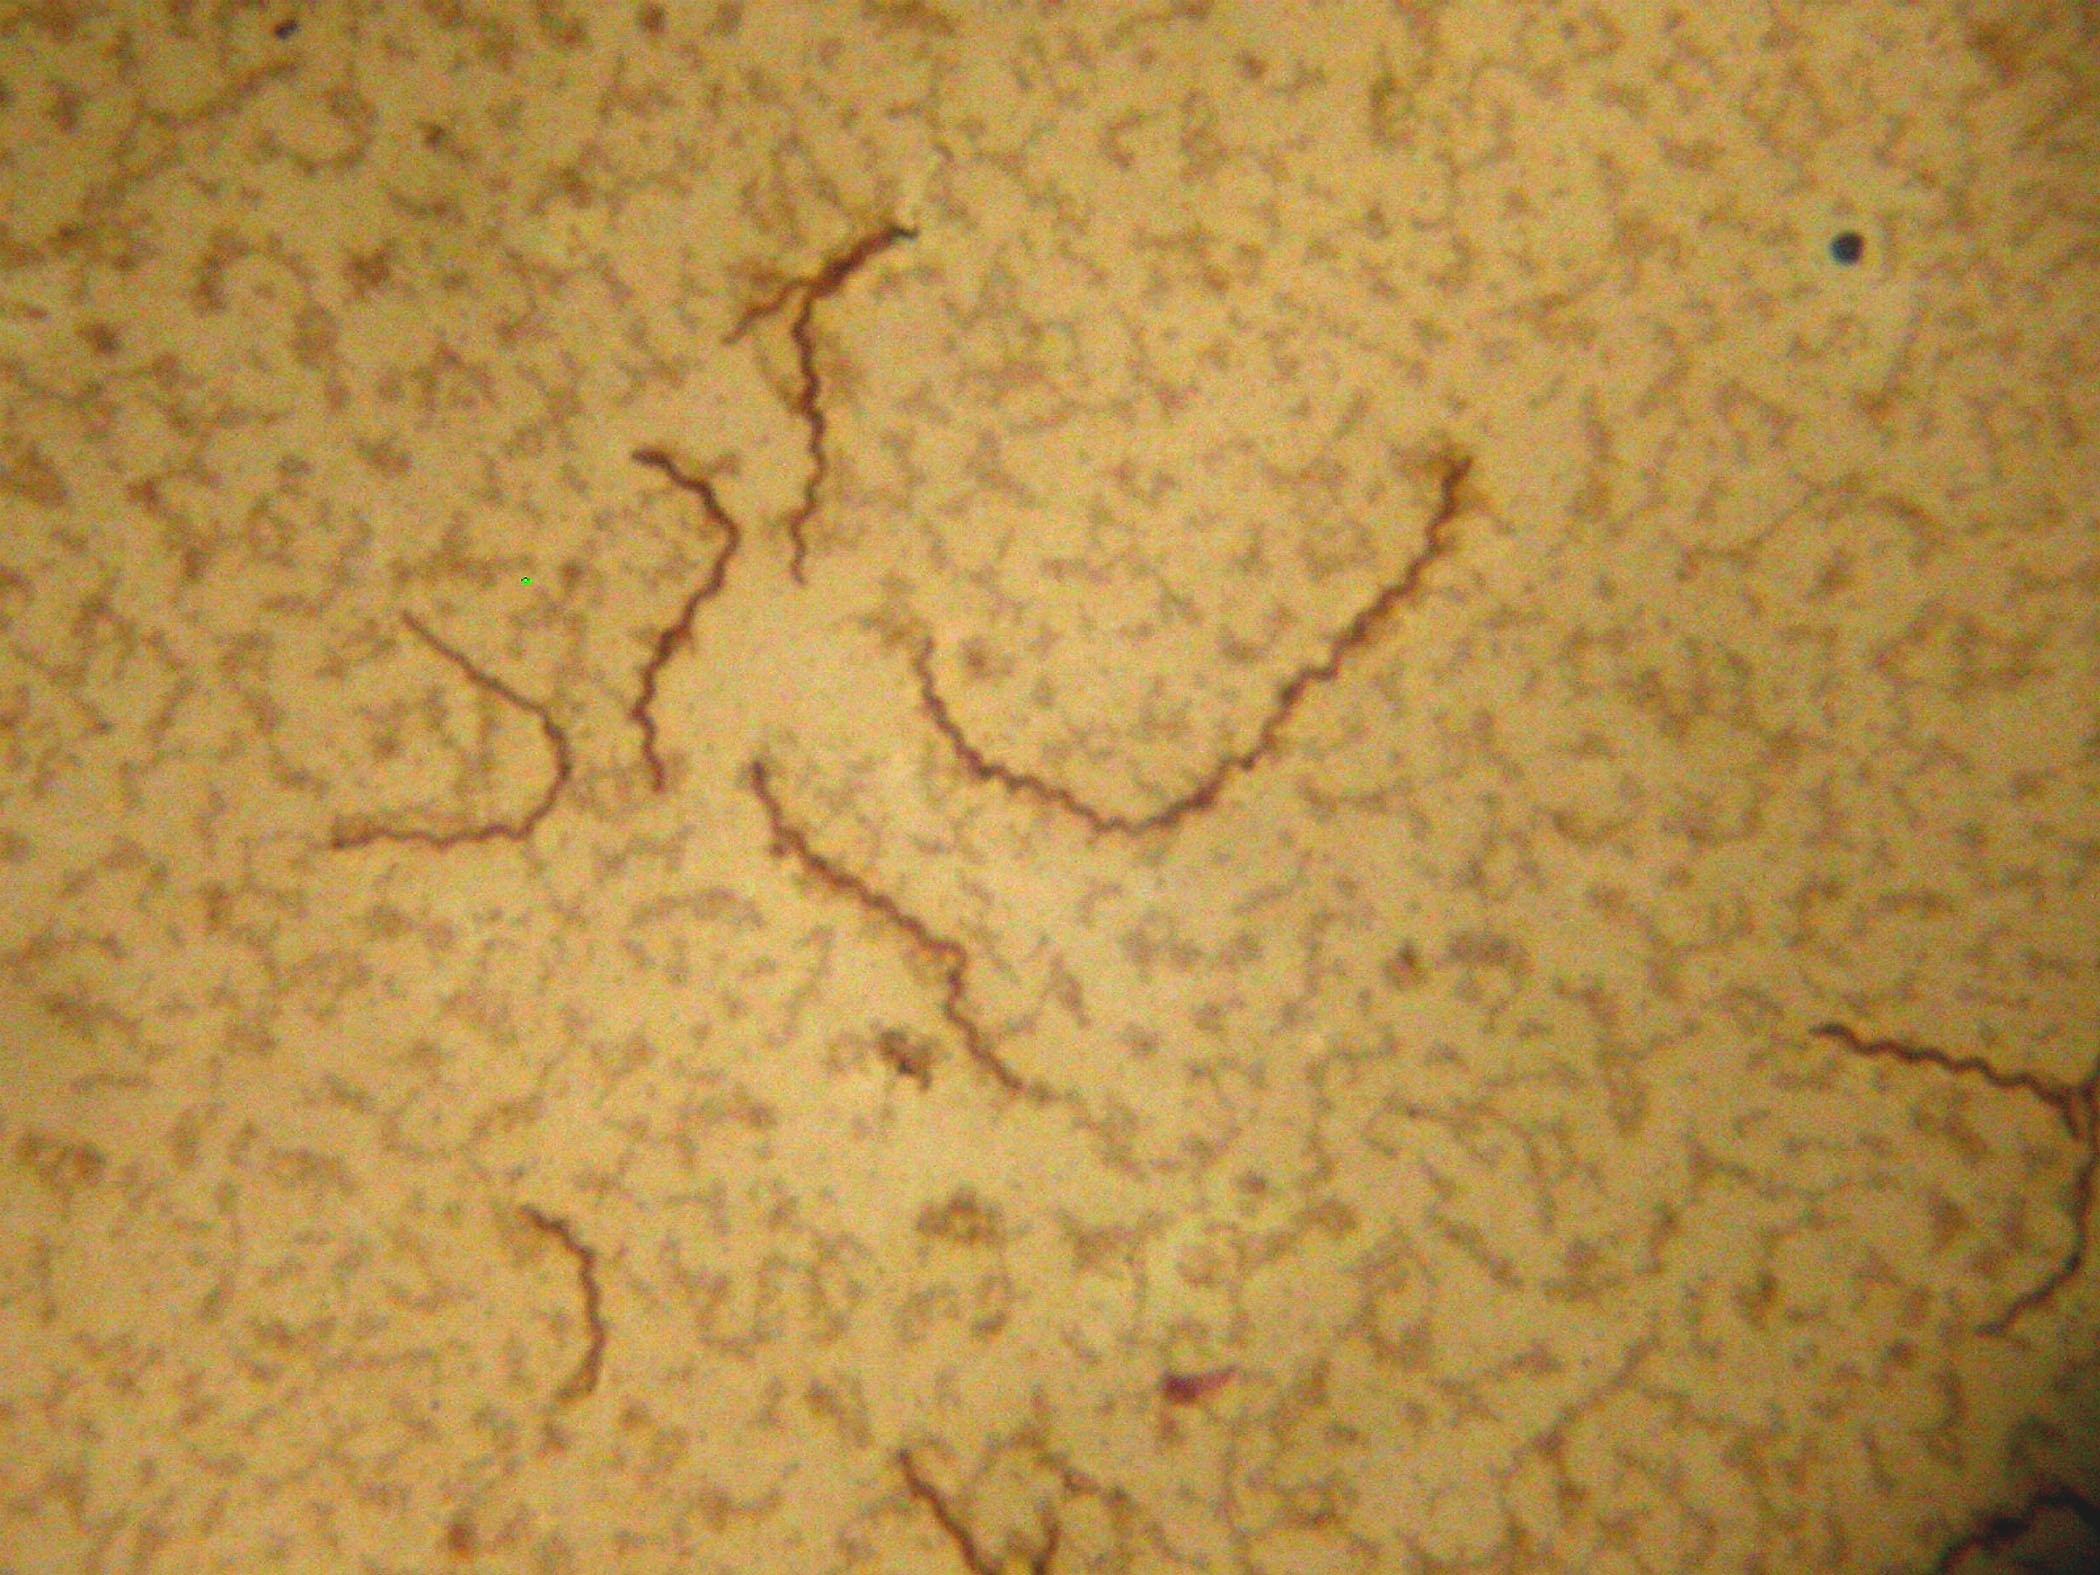 Заболевания вызываемые трепонемой. Бледная трепонема (Treponema pallidum). Бледная спирохета микробиология. Бледная трепонема Романовский Гимзе. Бледная спирохета под микроскопом.